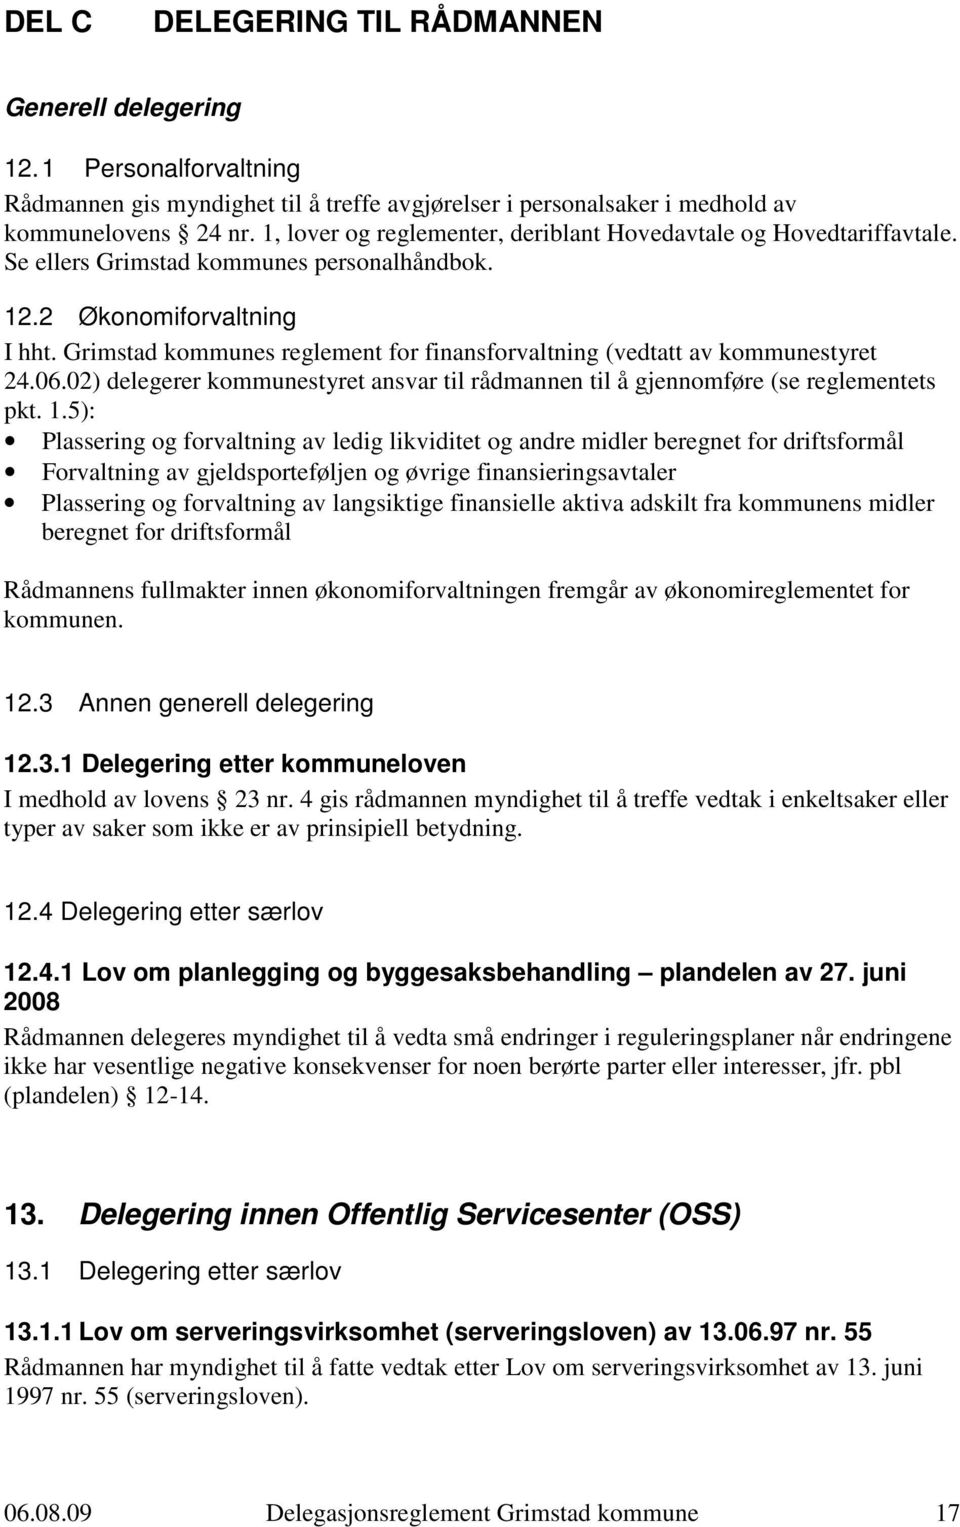 Grimstad kommunes reglement for finansforvaltning (vedtatt av kommunestyret 24.06.02) delegerer kommunestyret ansvar til rådmannen til å gjennomføre (se reglementets pkt. 1.